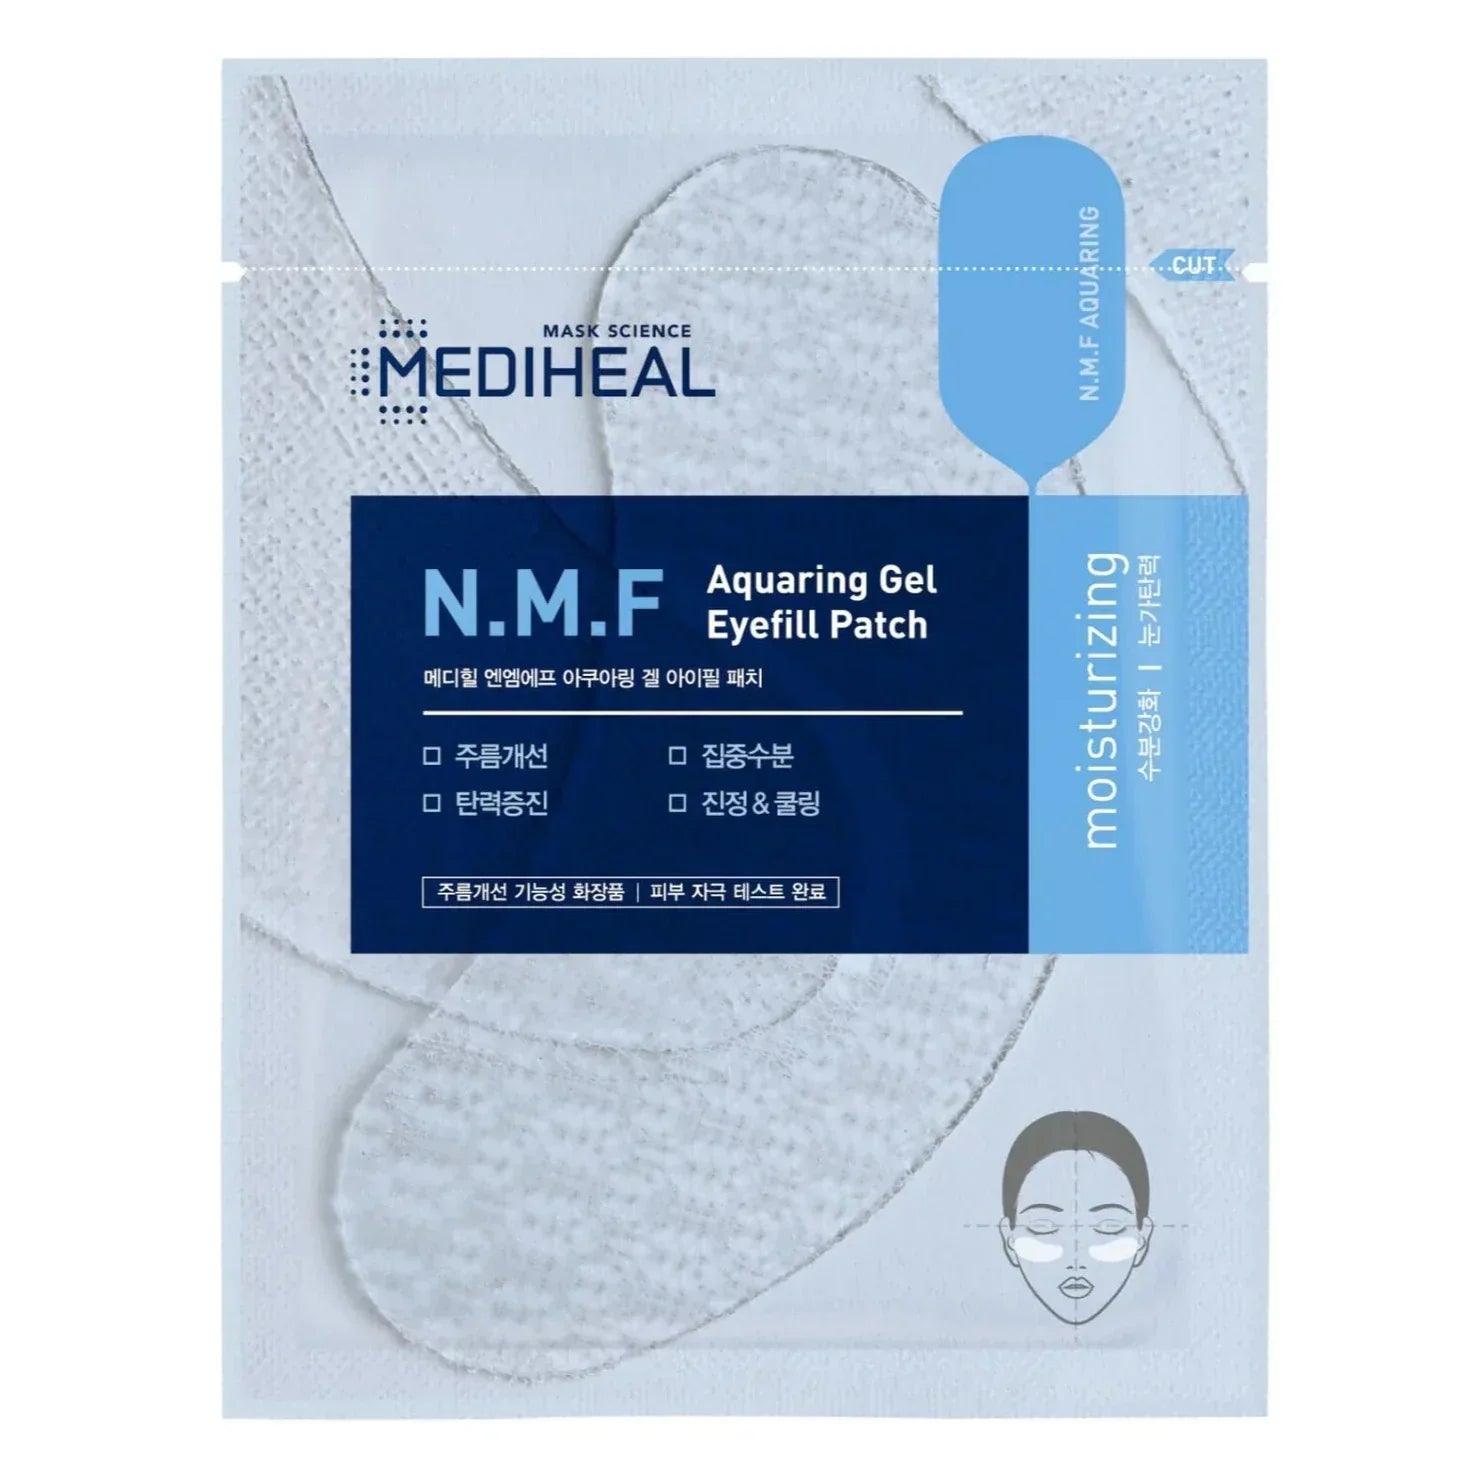 Mediheal N.M.F Aquaring Gel Eyefill Patch